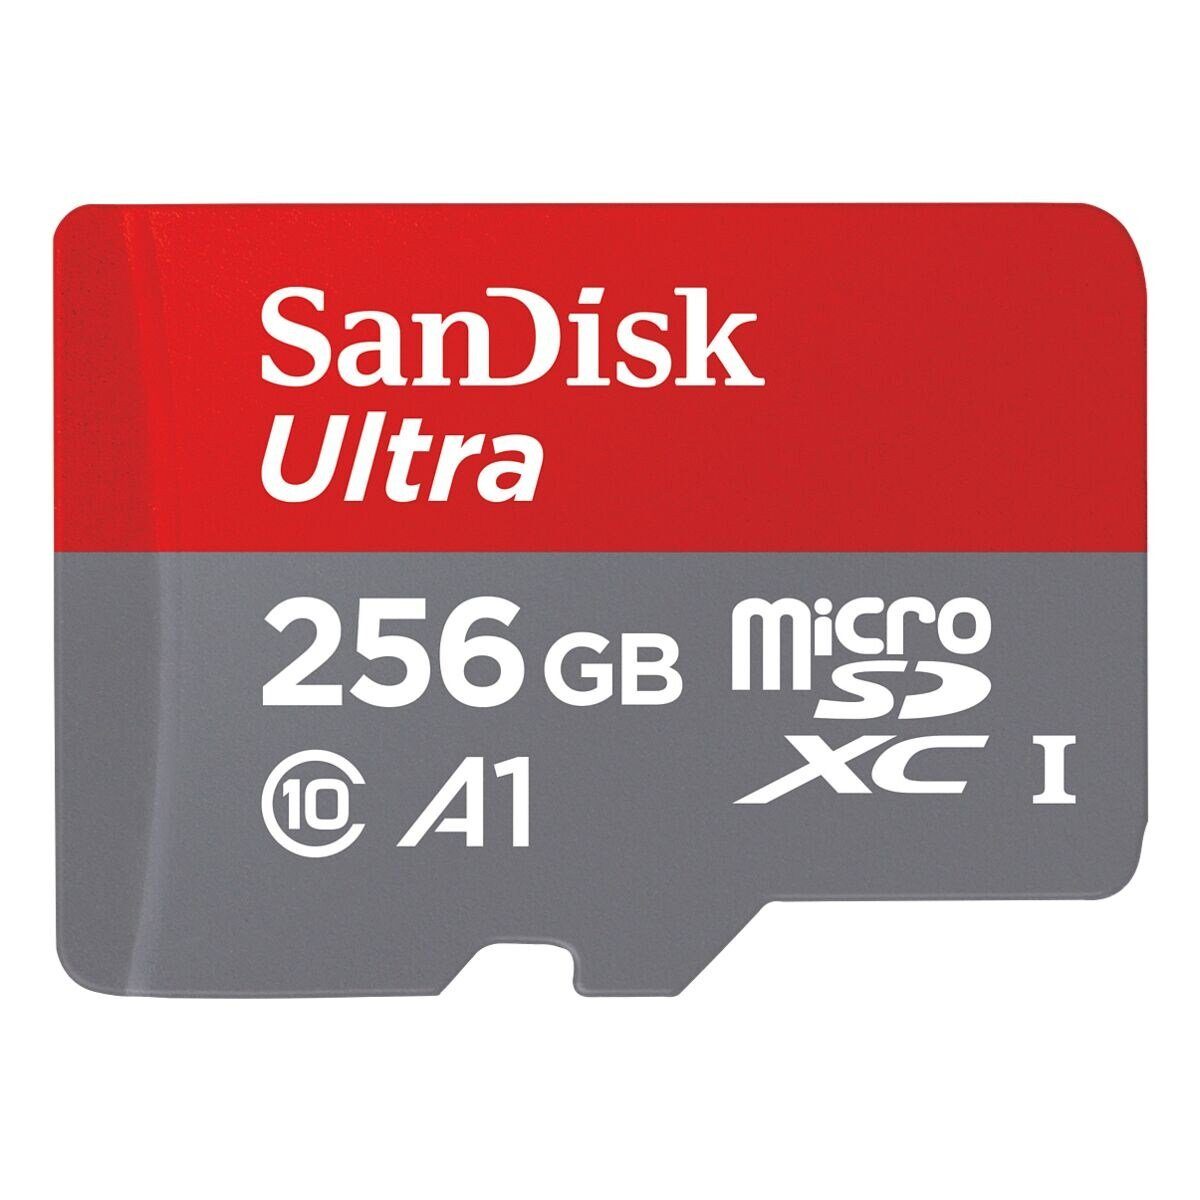 Sandisk Ultra Speicherkarte (256 GB, 150 MB/s Lesegeschwindigkeit, inklusive SD-Adapter)